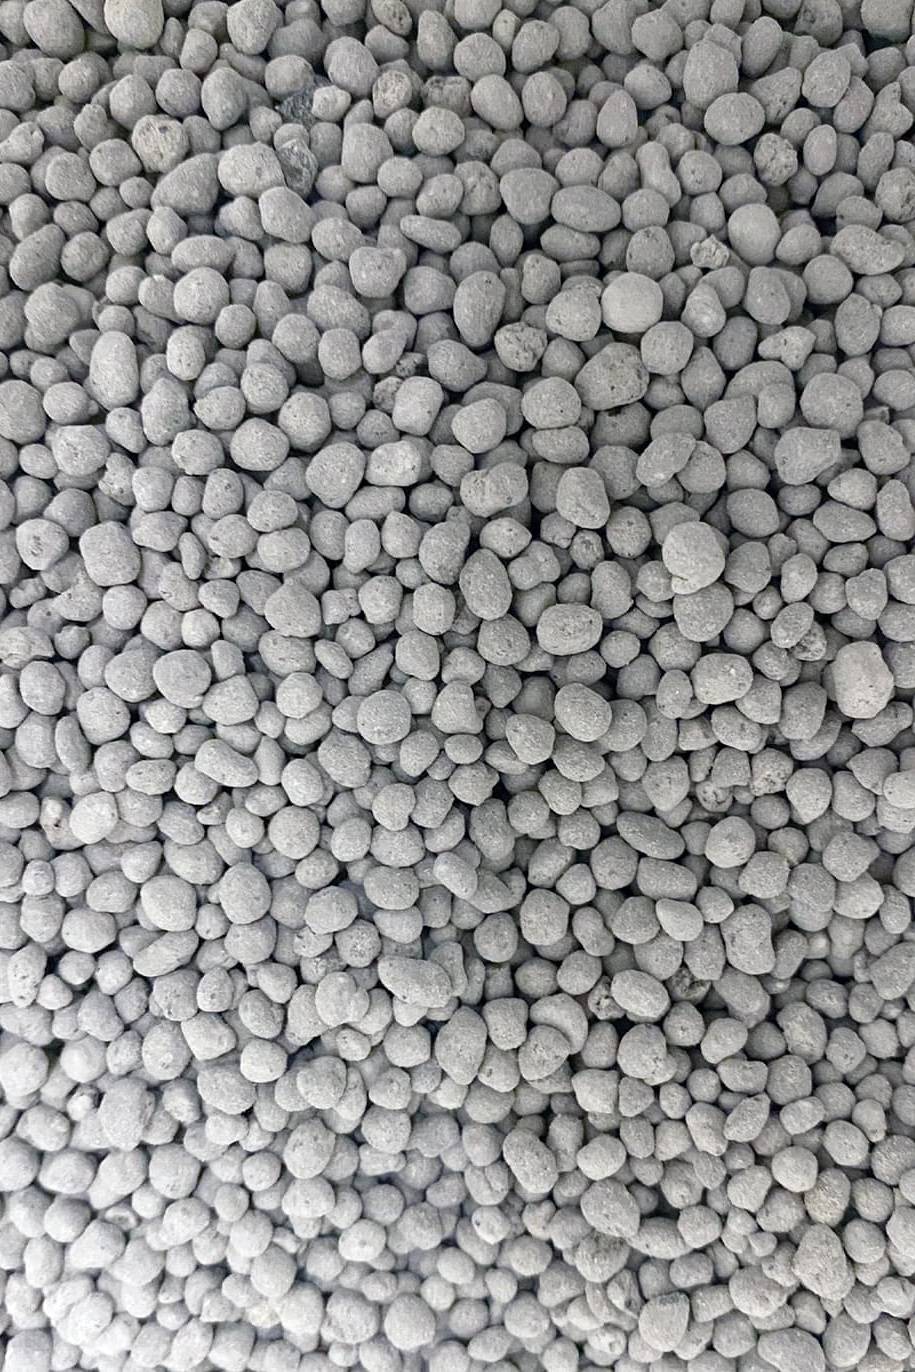 Agricultural Gypsum - Calcium Carbonate Fertilizer